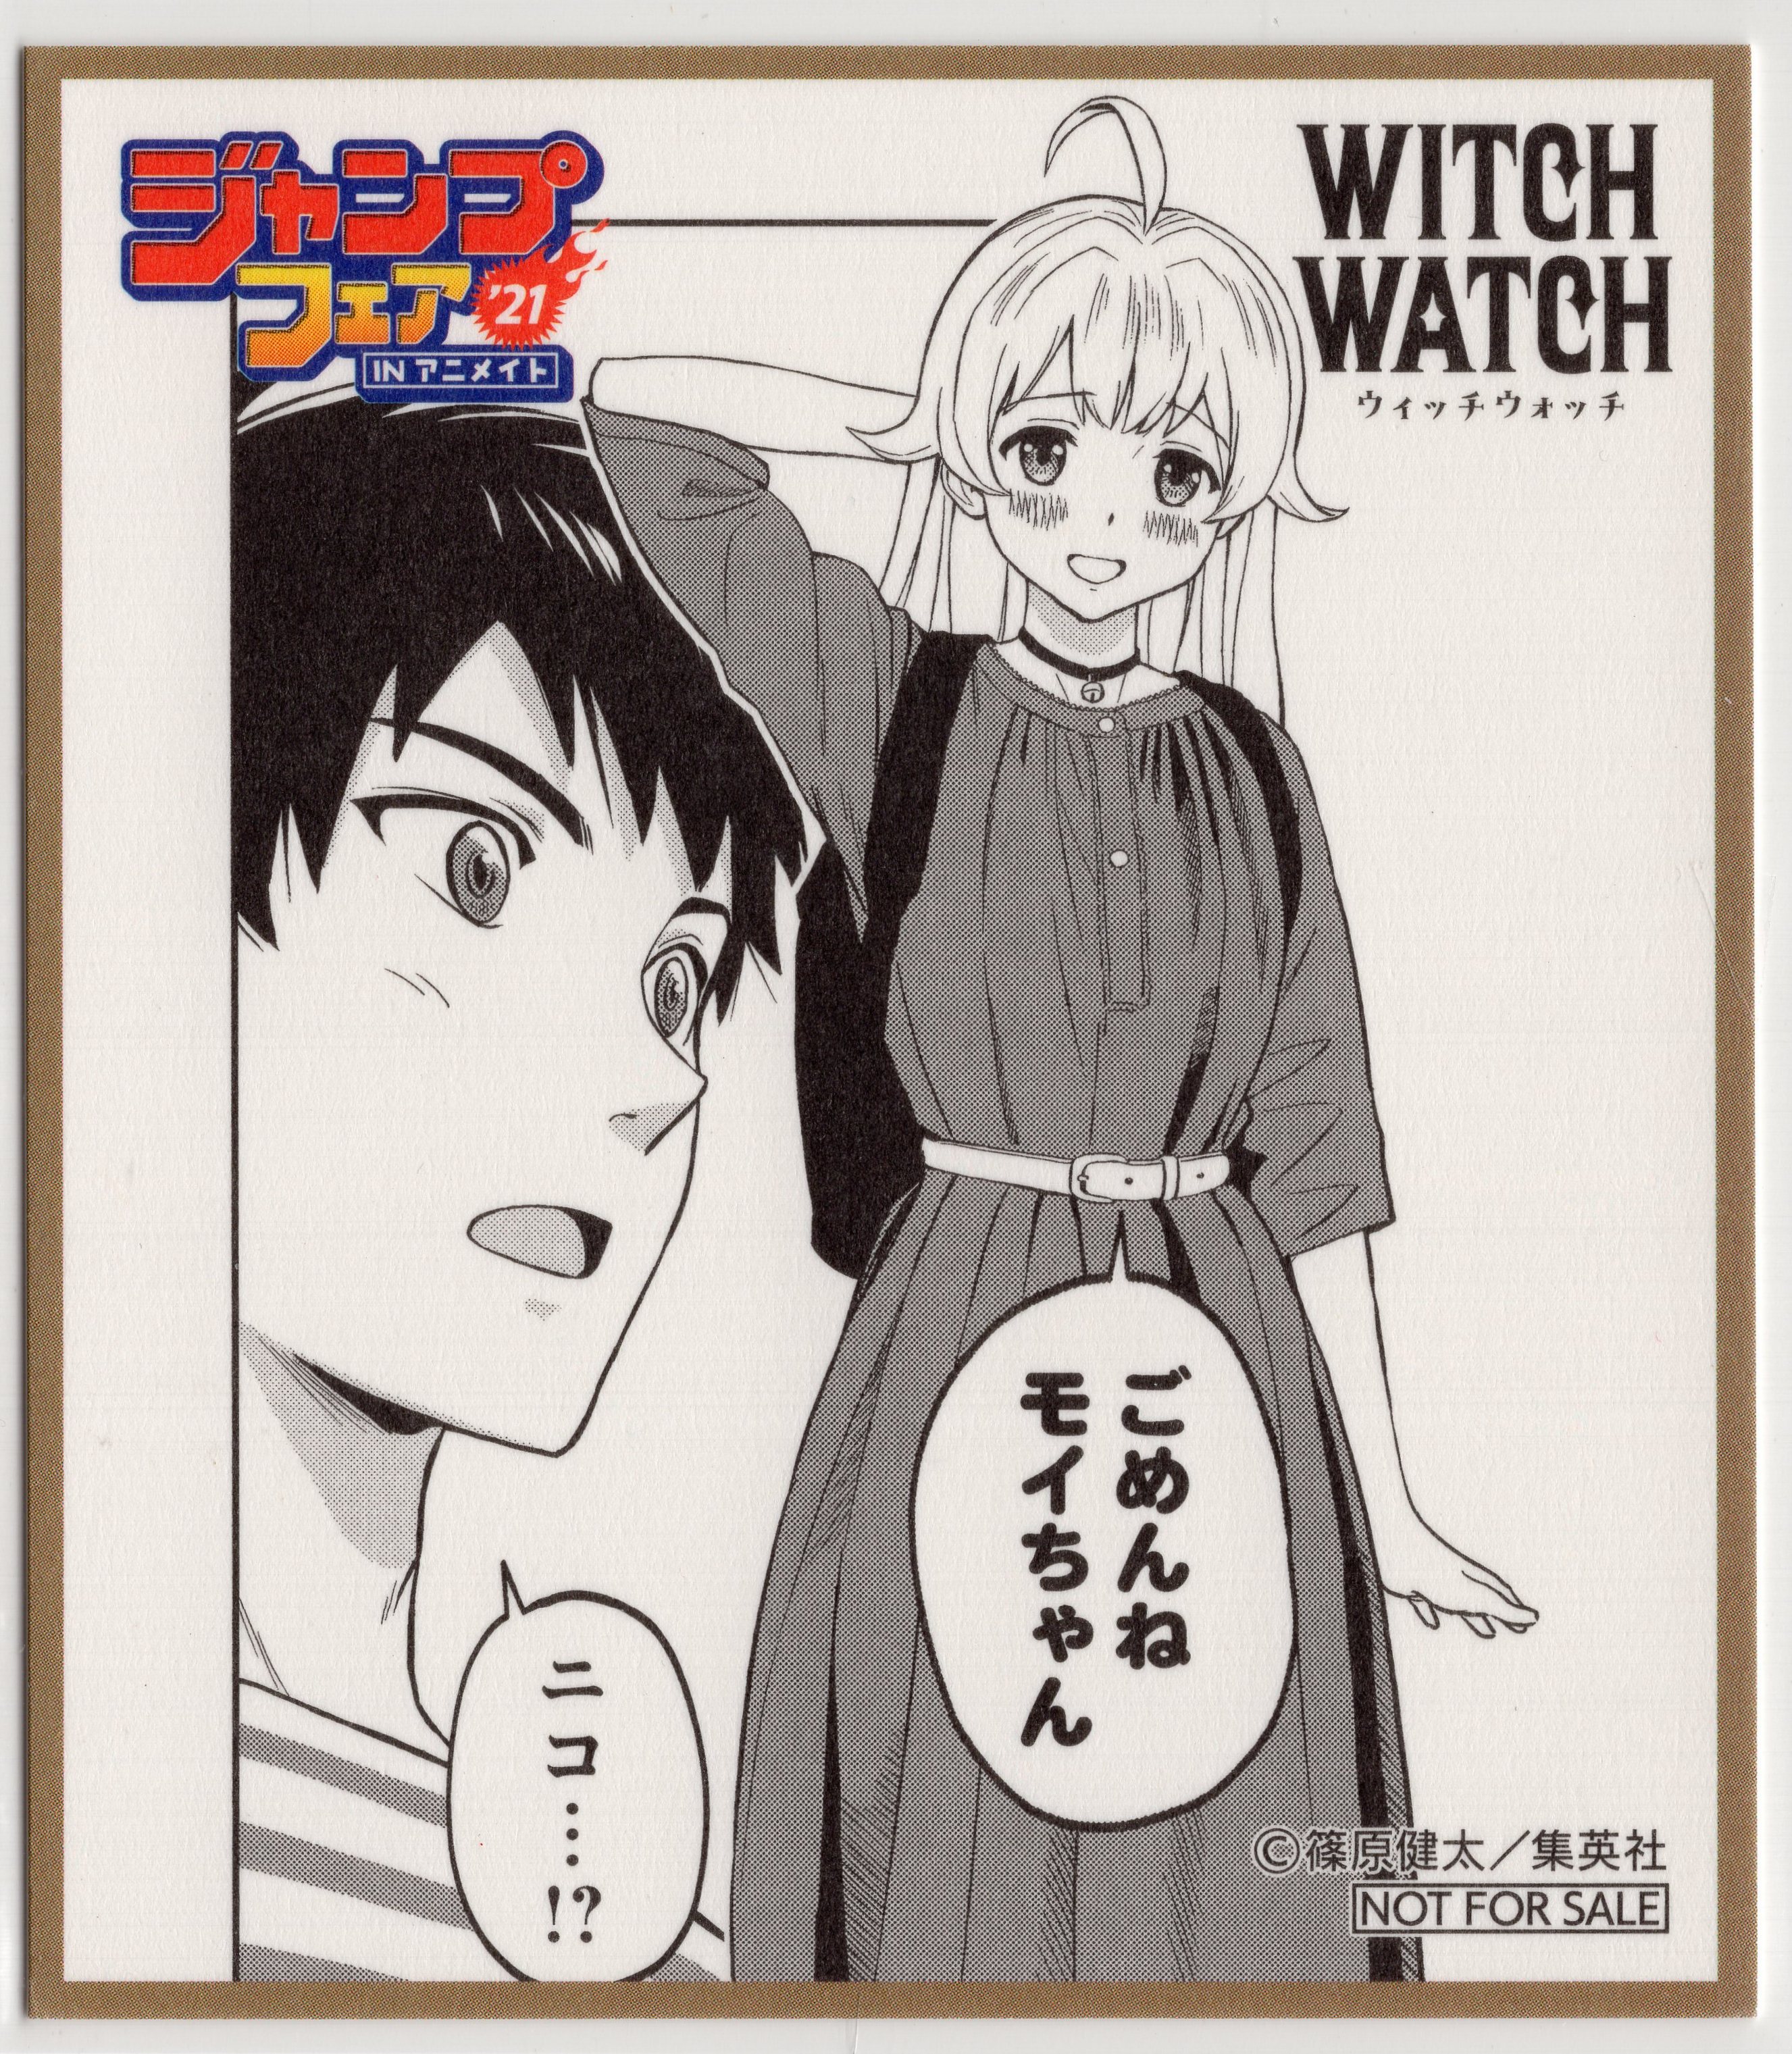 集英社 ジャンプフェア 21 Inアニメイト ミニ色紙 Witch Watch まんだらけ Mandarake